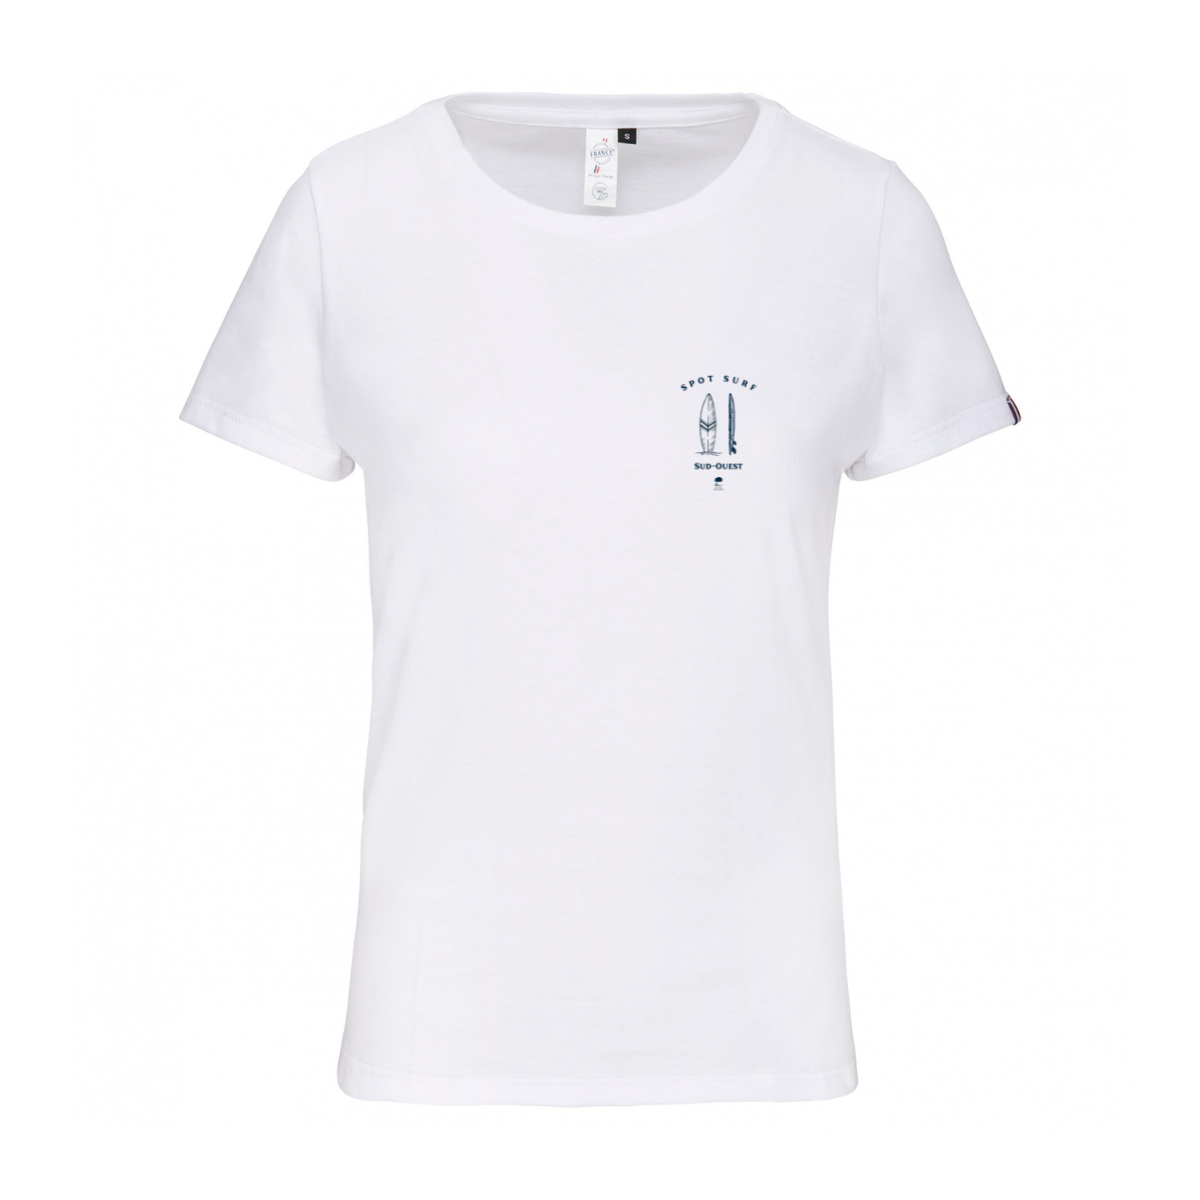 🇫🇷 Tee-shirt français femme Spot Surf poche